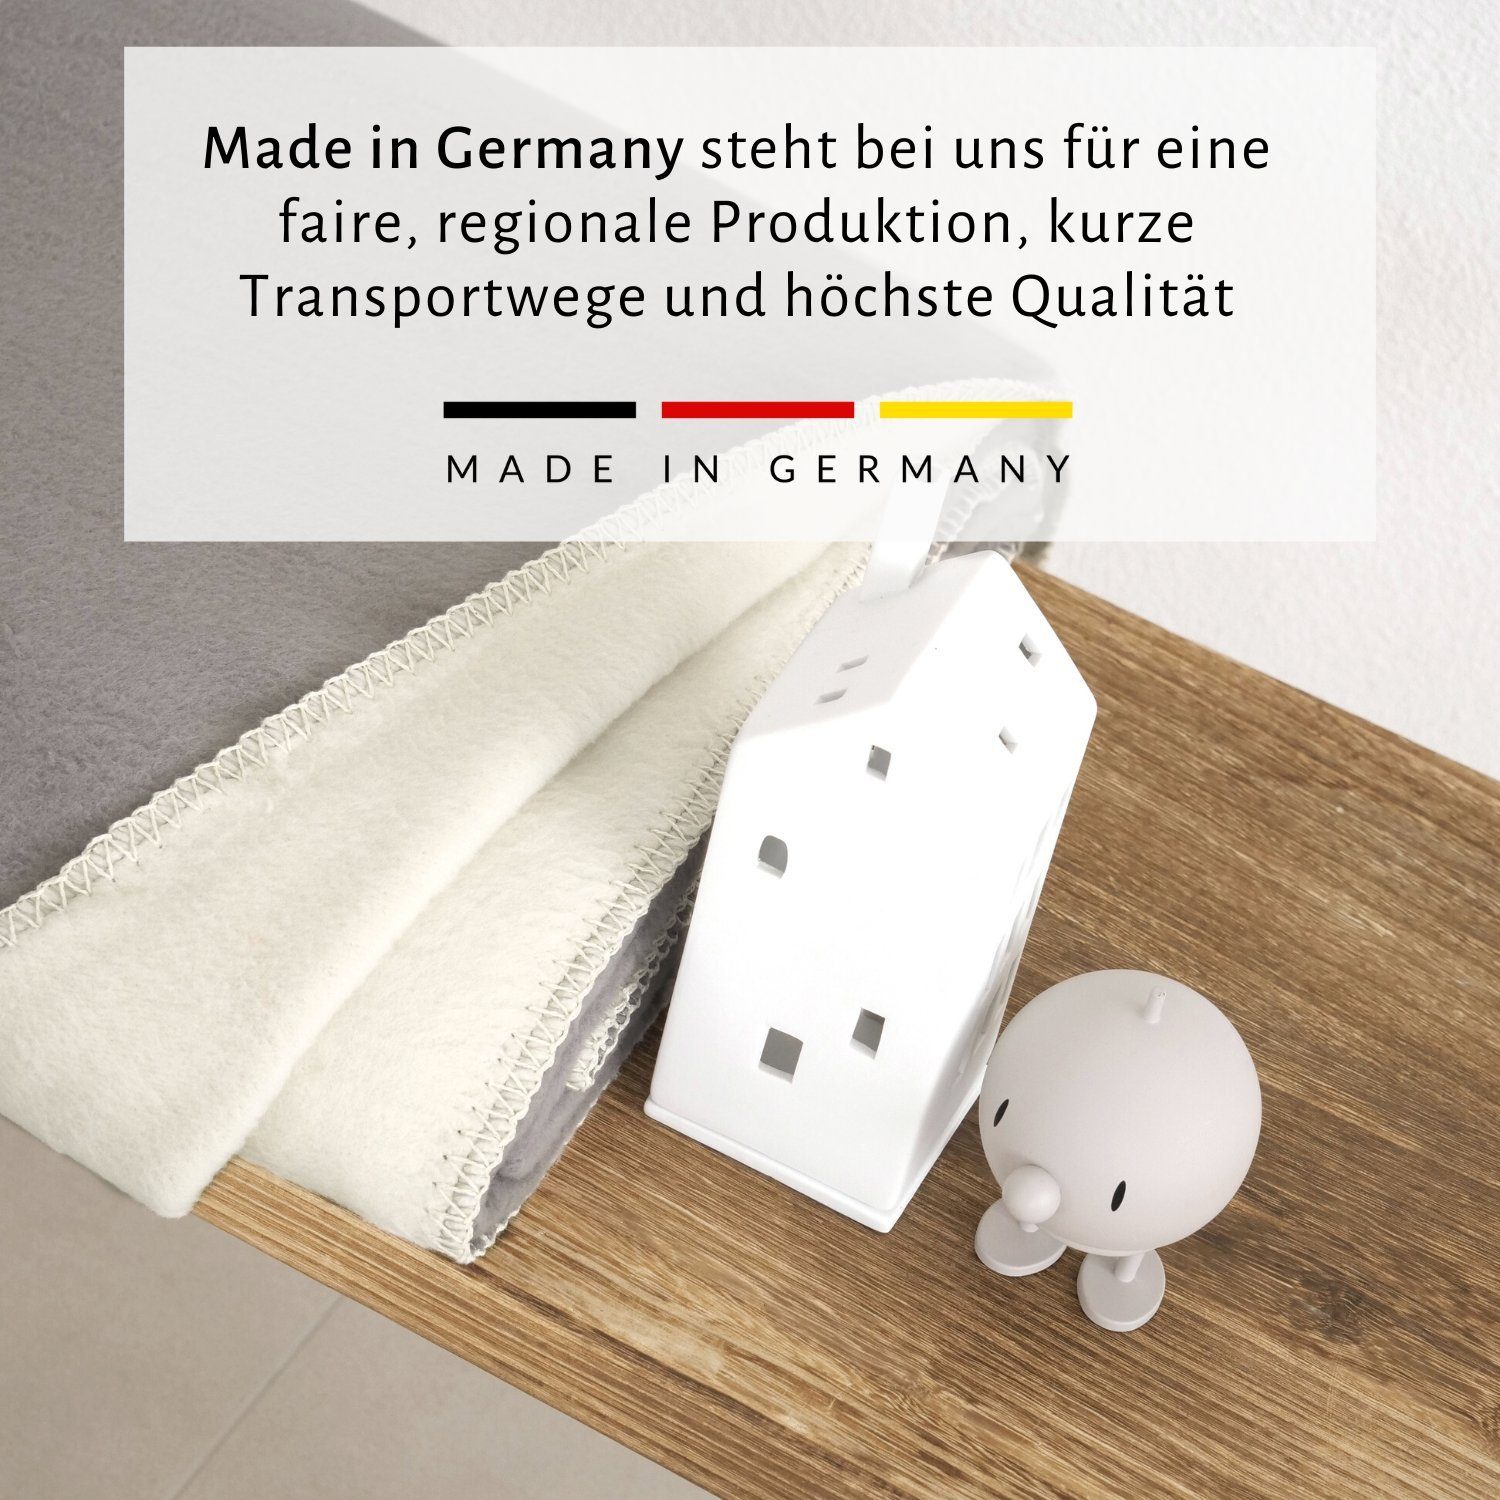 Germany OEKOTEX Made weich Premium Kuscheldecke RIEMA Wohndecke aus in 150x200cm weiche Germany, kuschelig, & Bio-Baumwolle, Baumwolldecke 100%